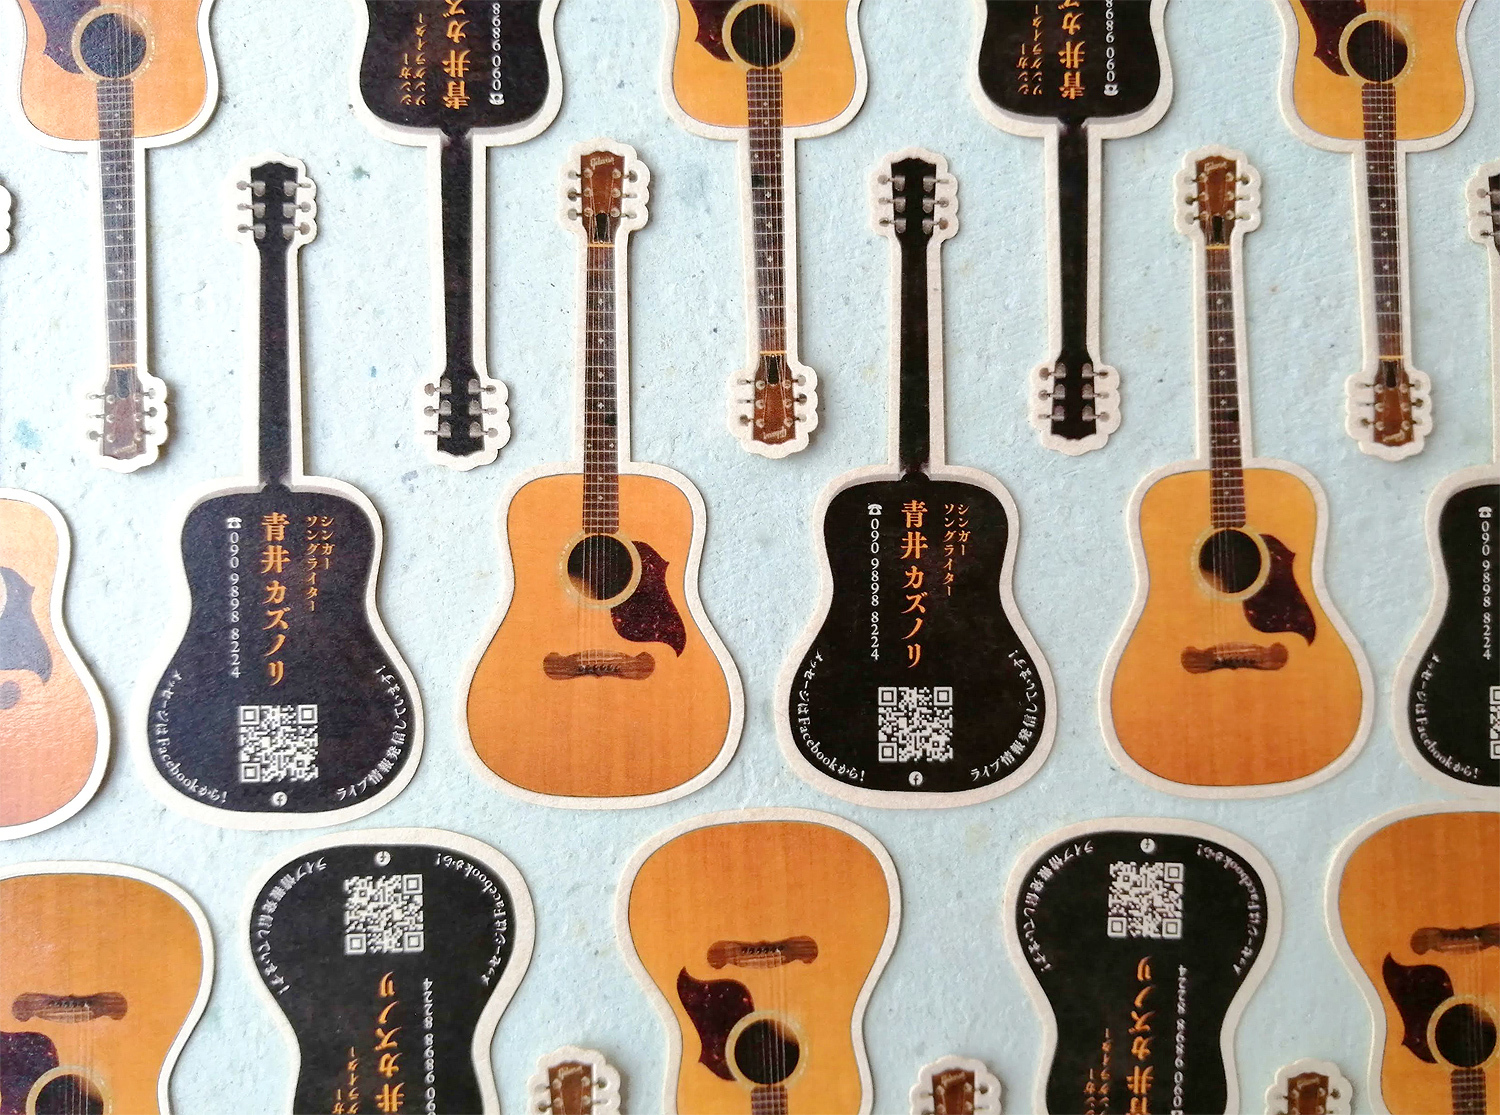 ギター型のカタヌキ&透明箔名刺